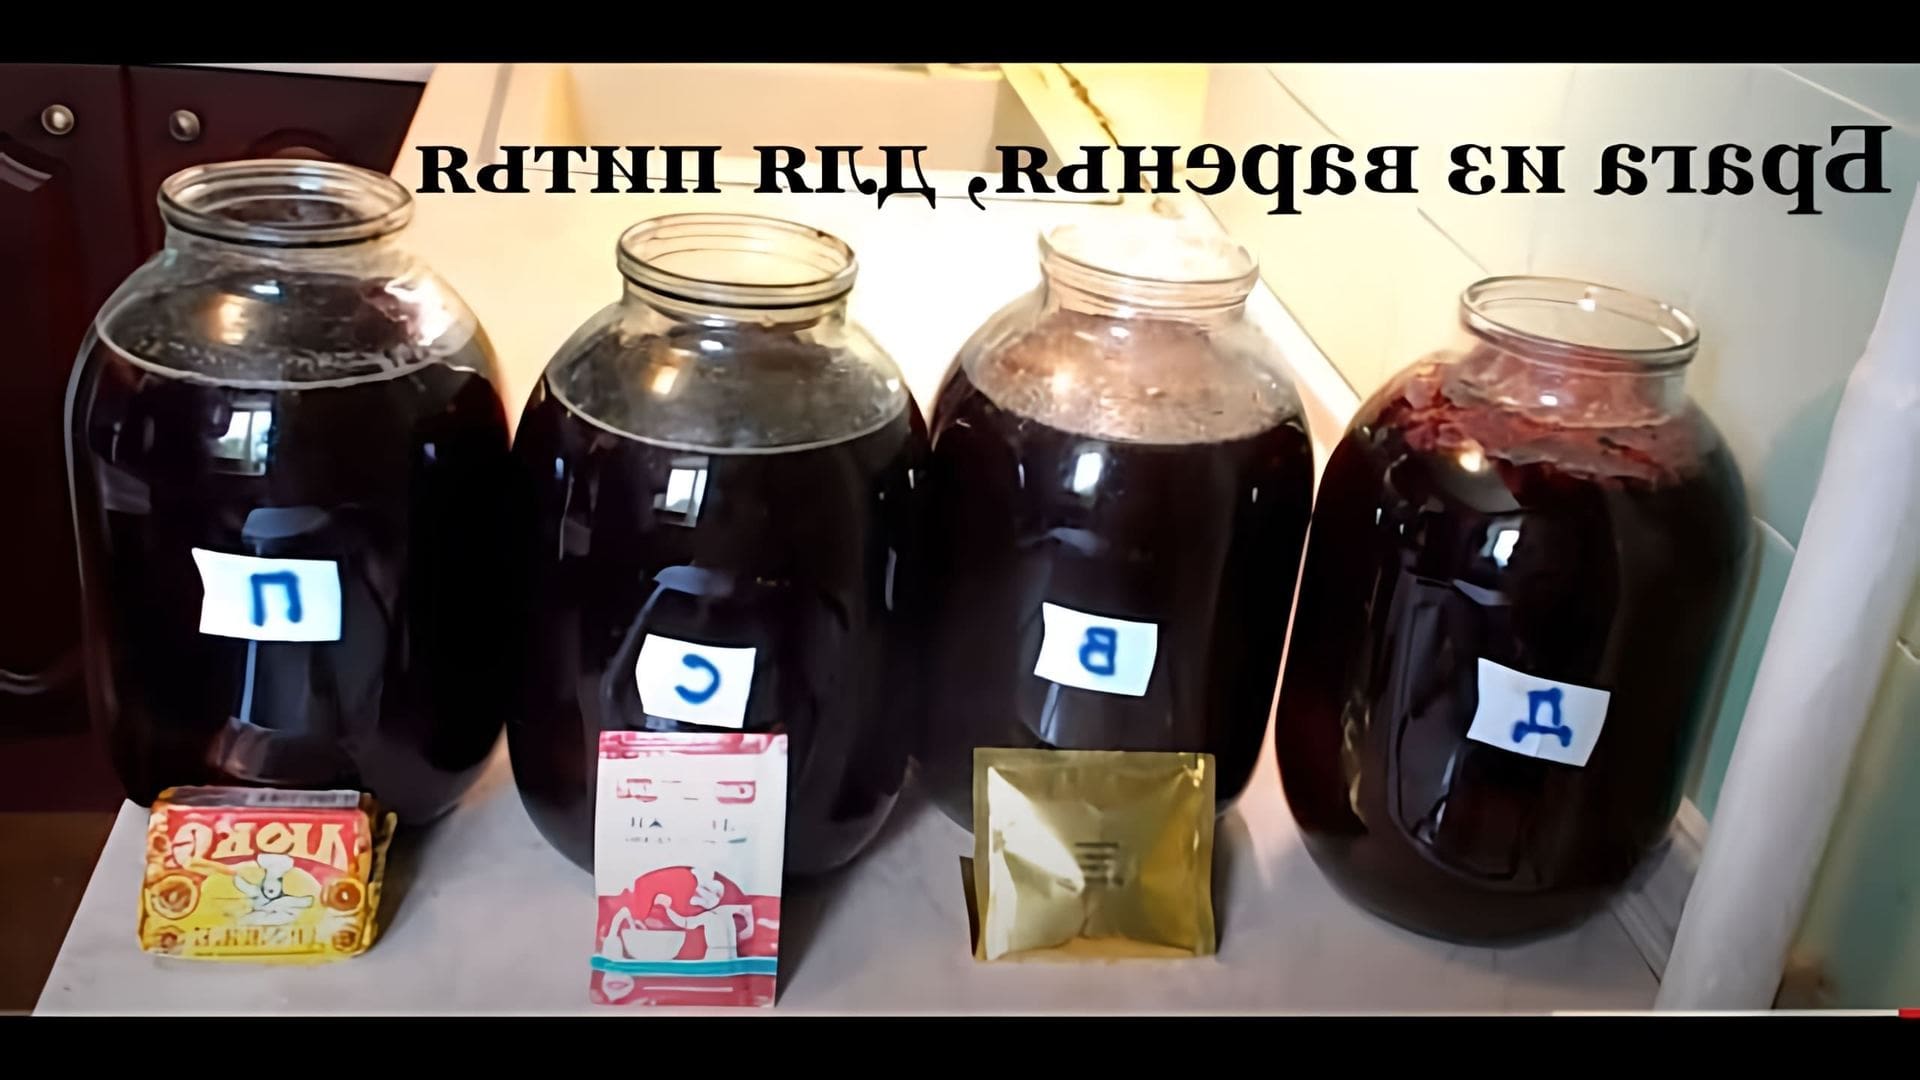 В этом видео Дмитрий показывает, как приготовить брагу из варенья для питья